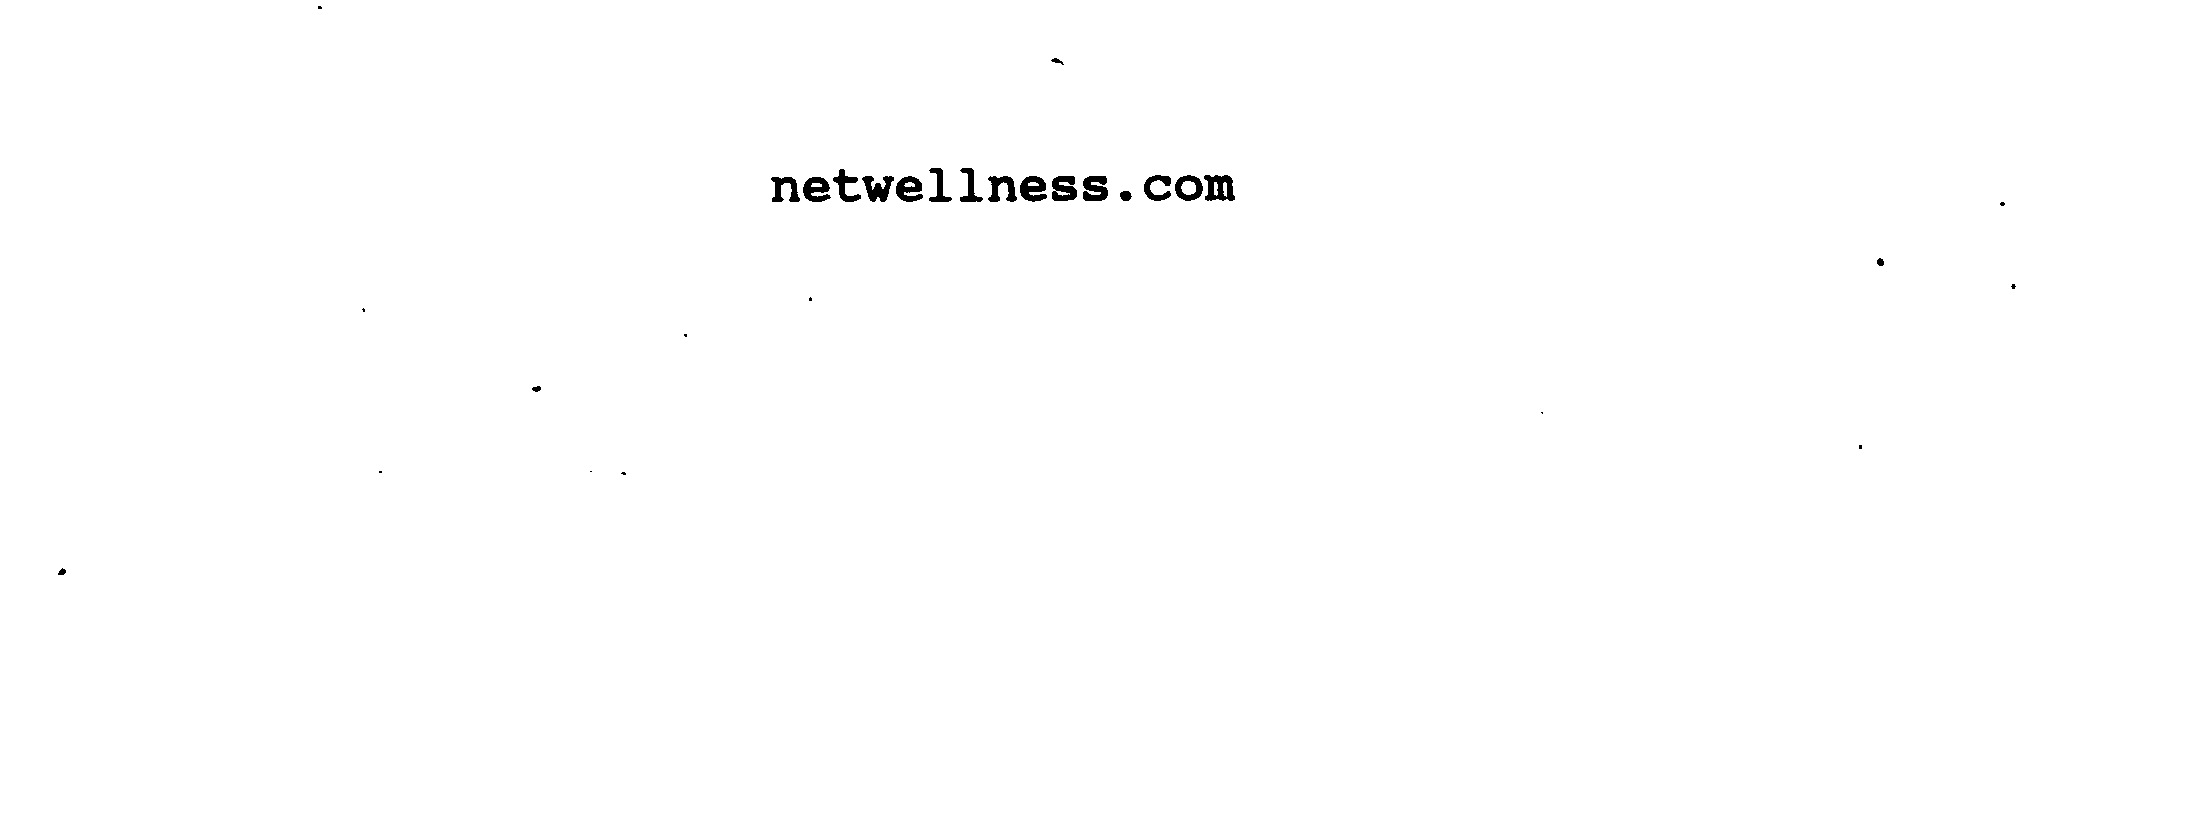  NETWELLNESS.COM